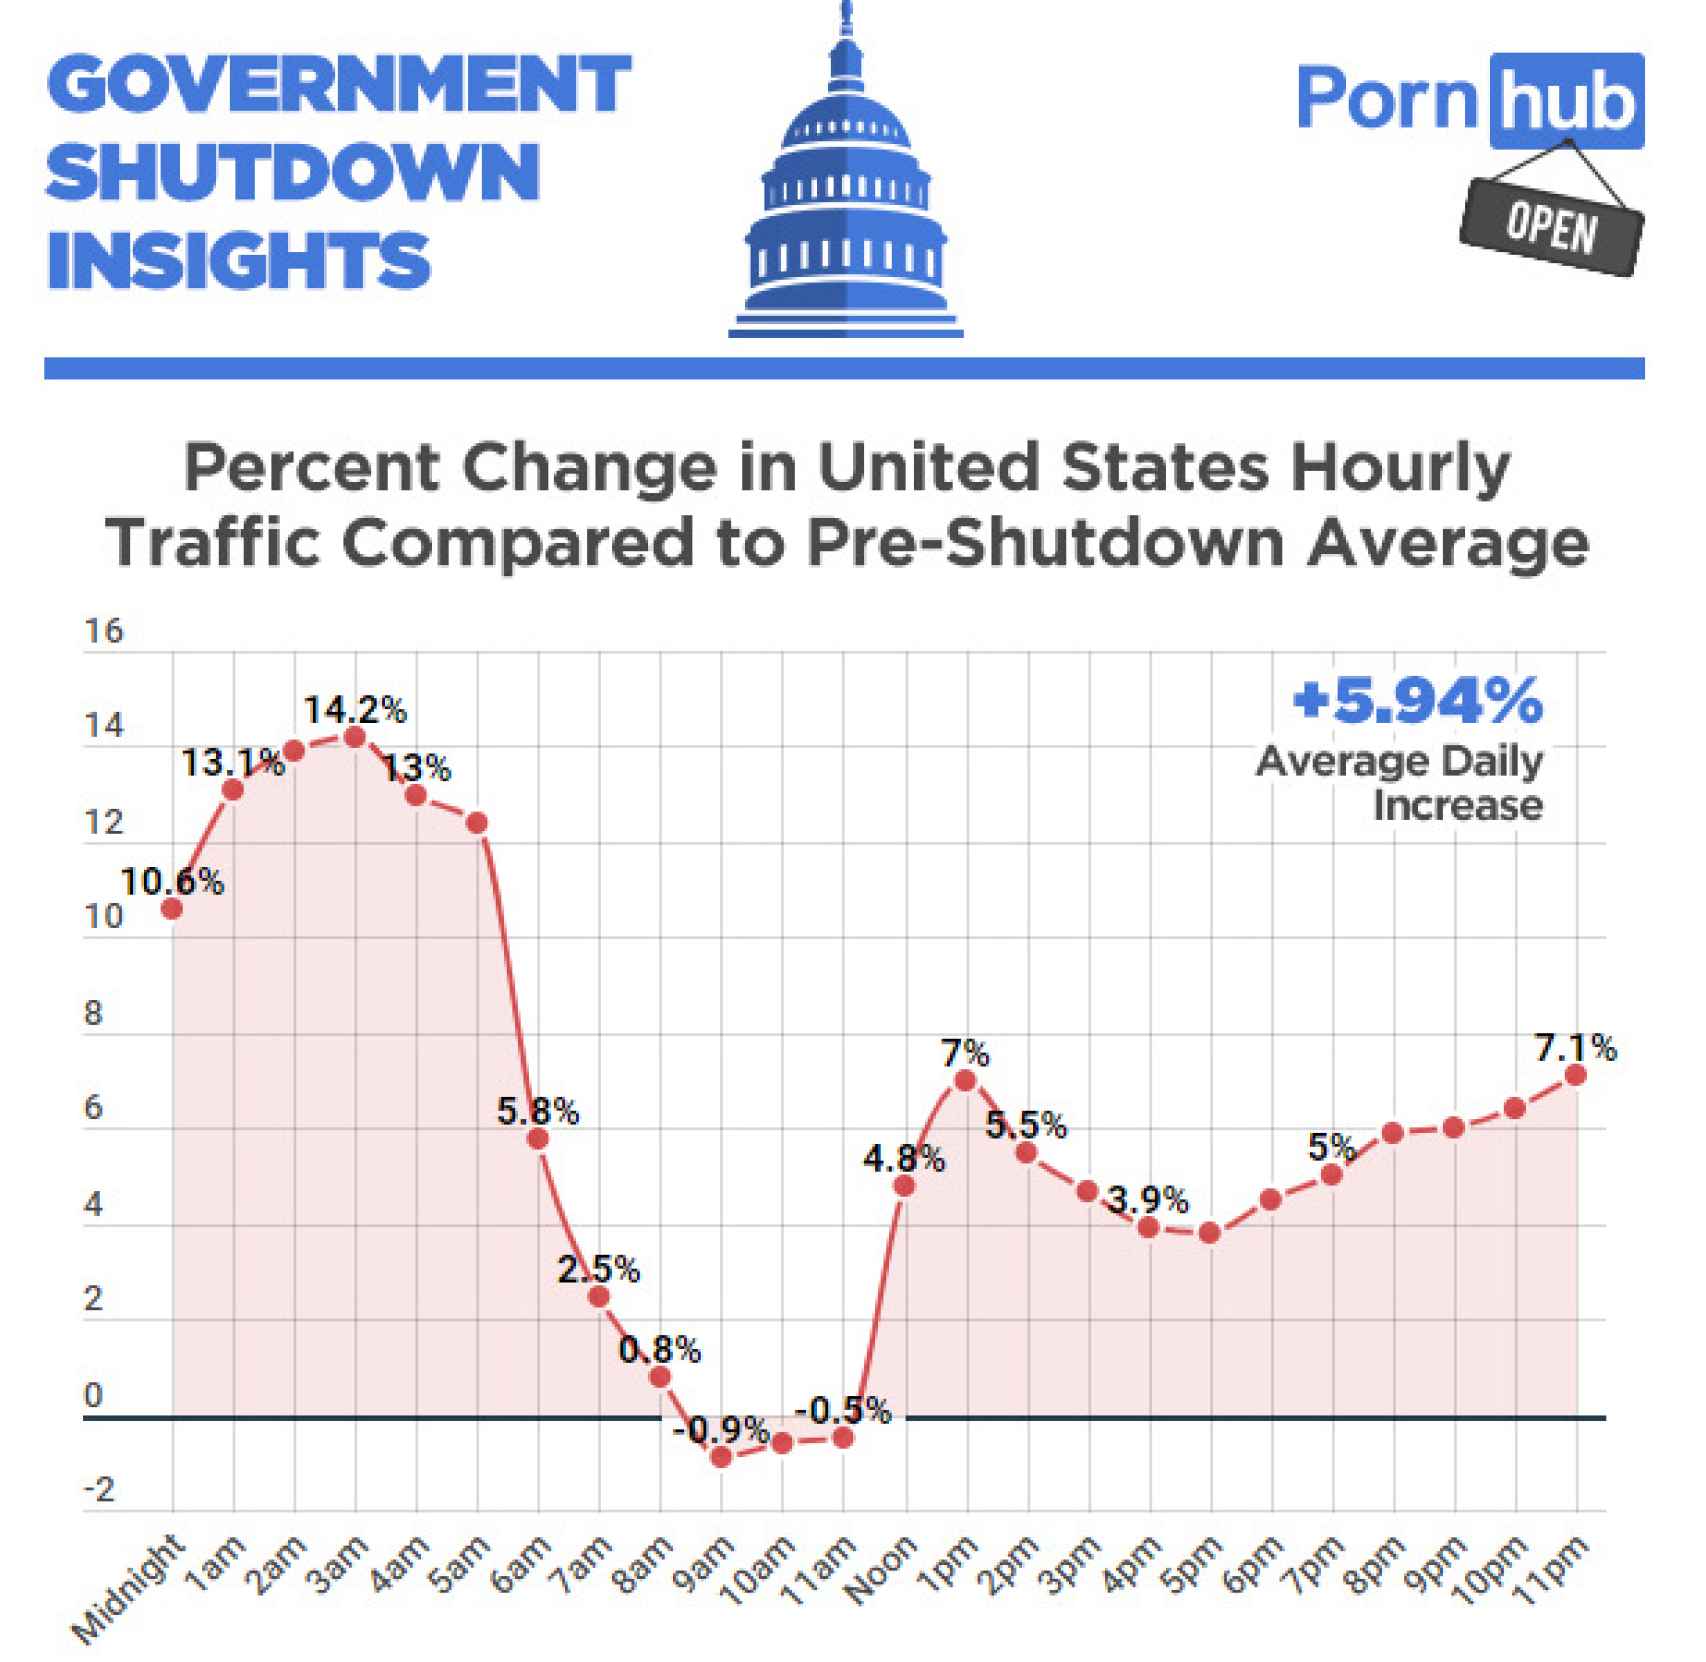 El tráfico de PornHub comparado con la media anterior al cierre del gobierno.